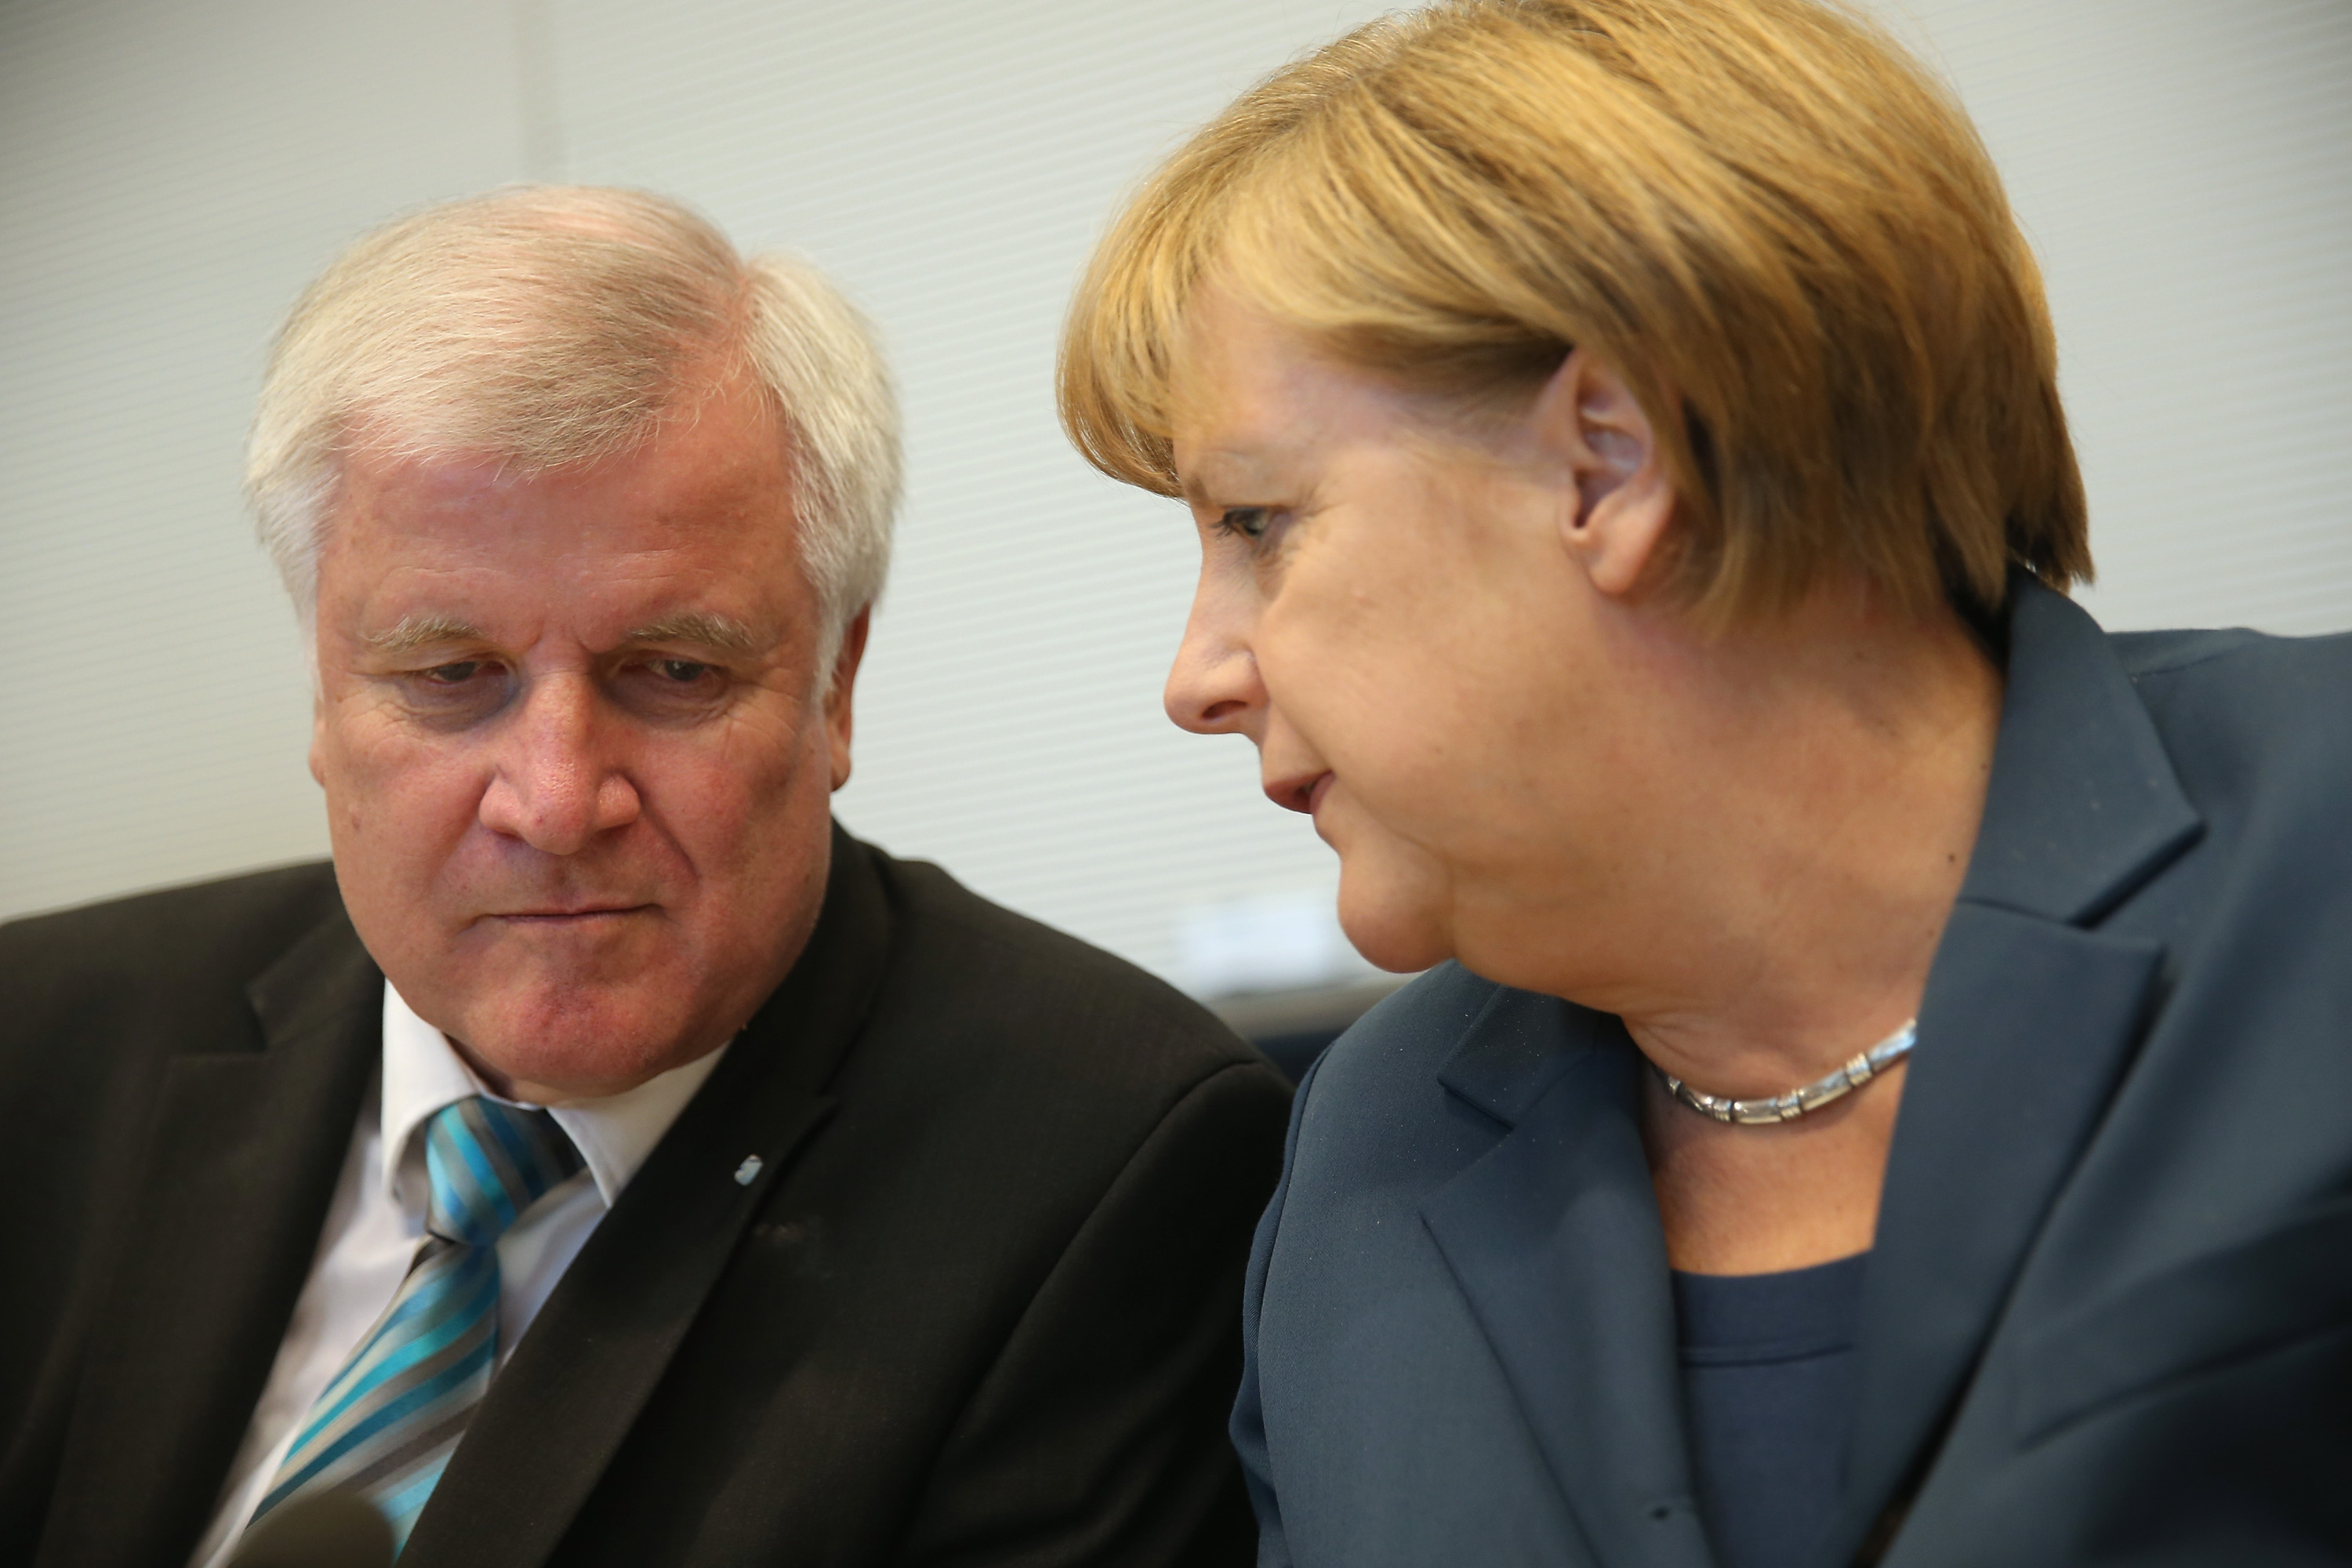 Trotzt Uneinigkeit im Asylstreit auf Kuschelkurs: Merkel und Seehofer treten gemeinsam im Bierzelt auf